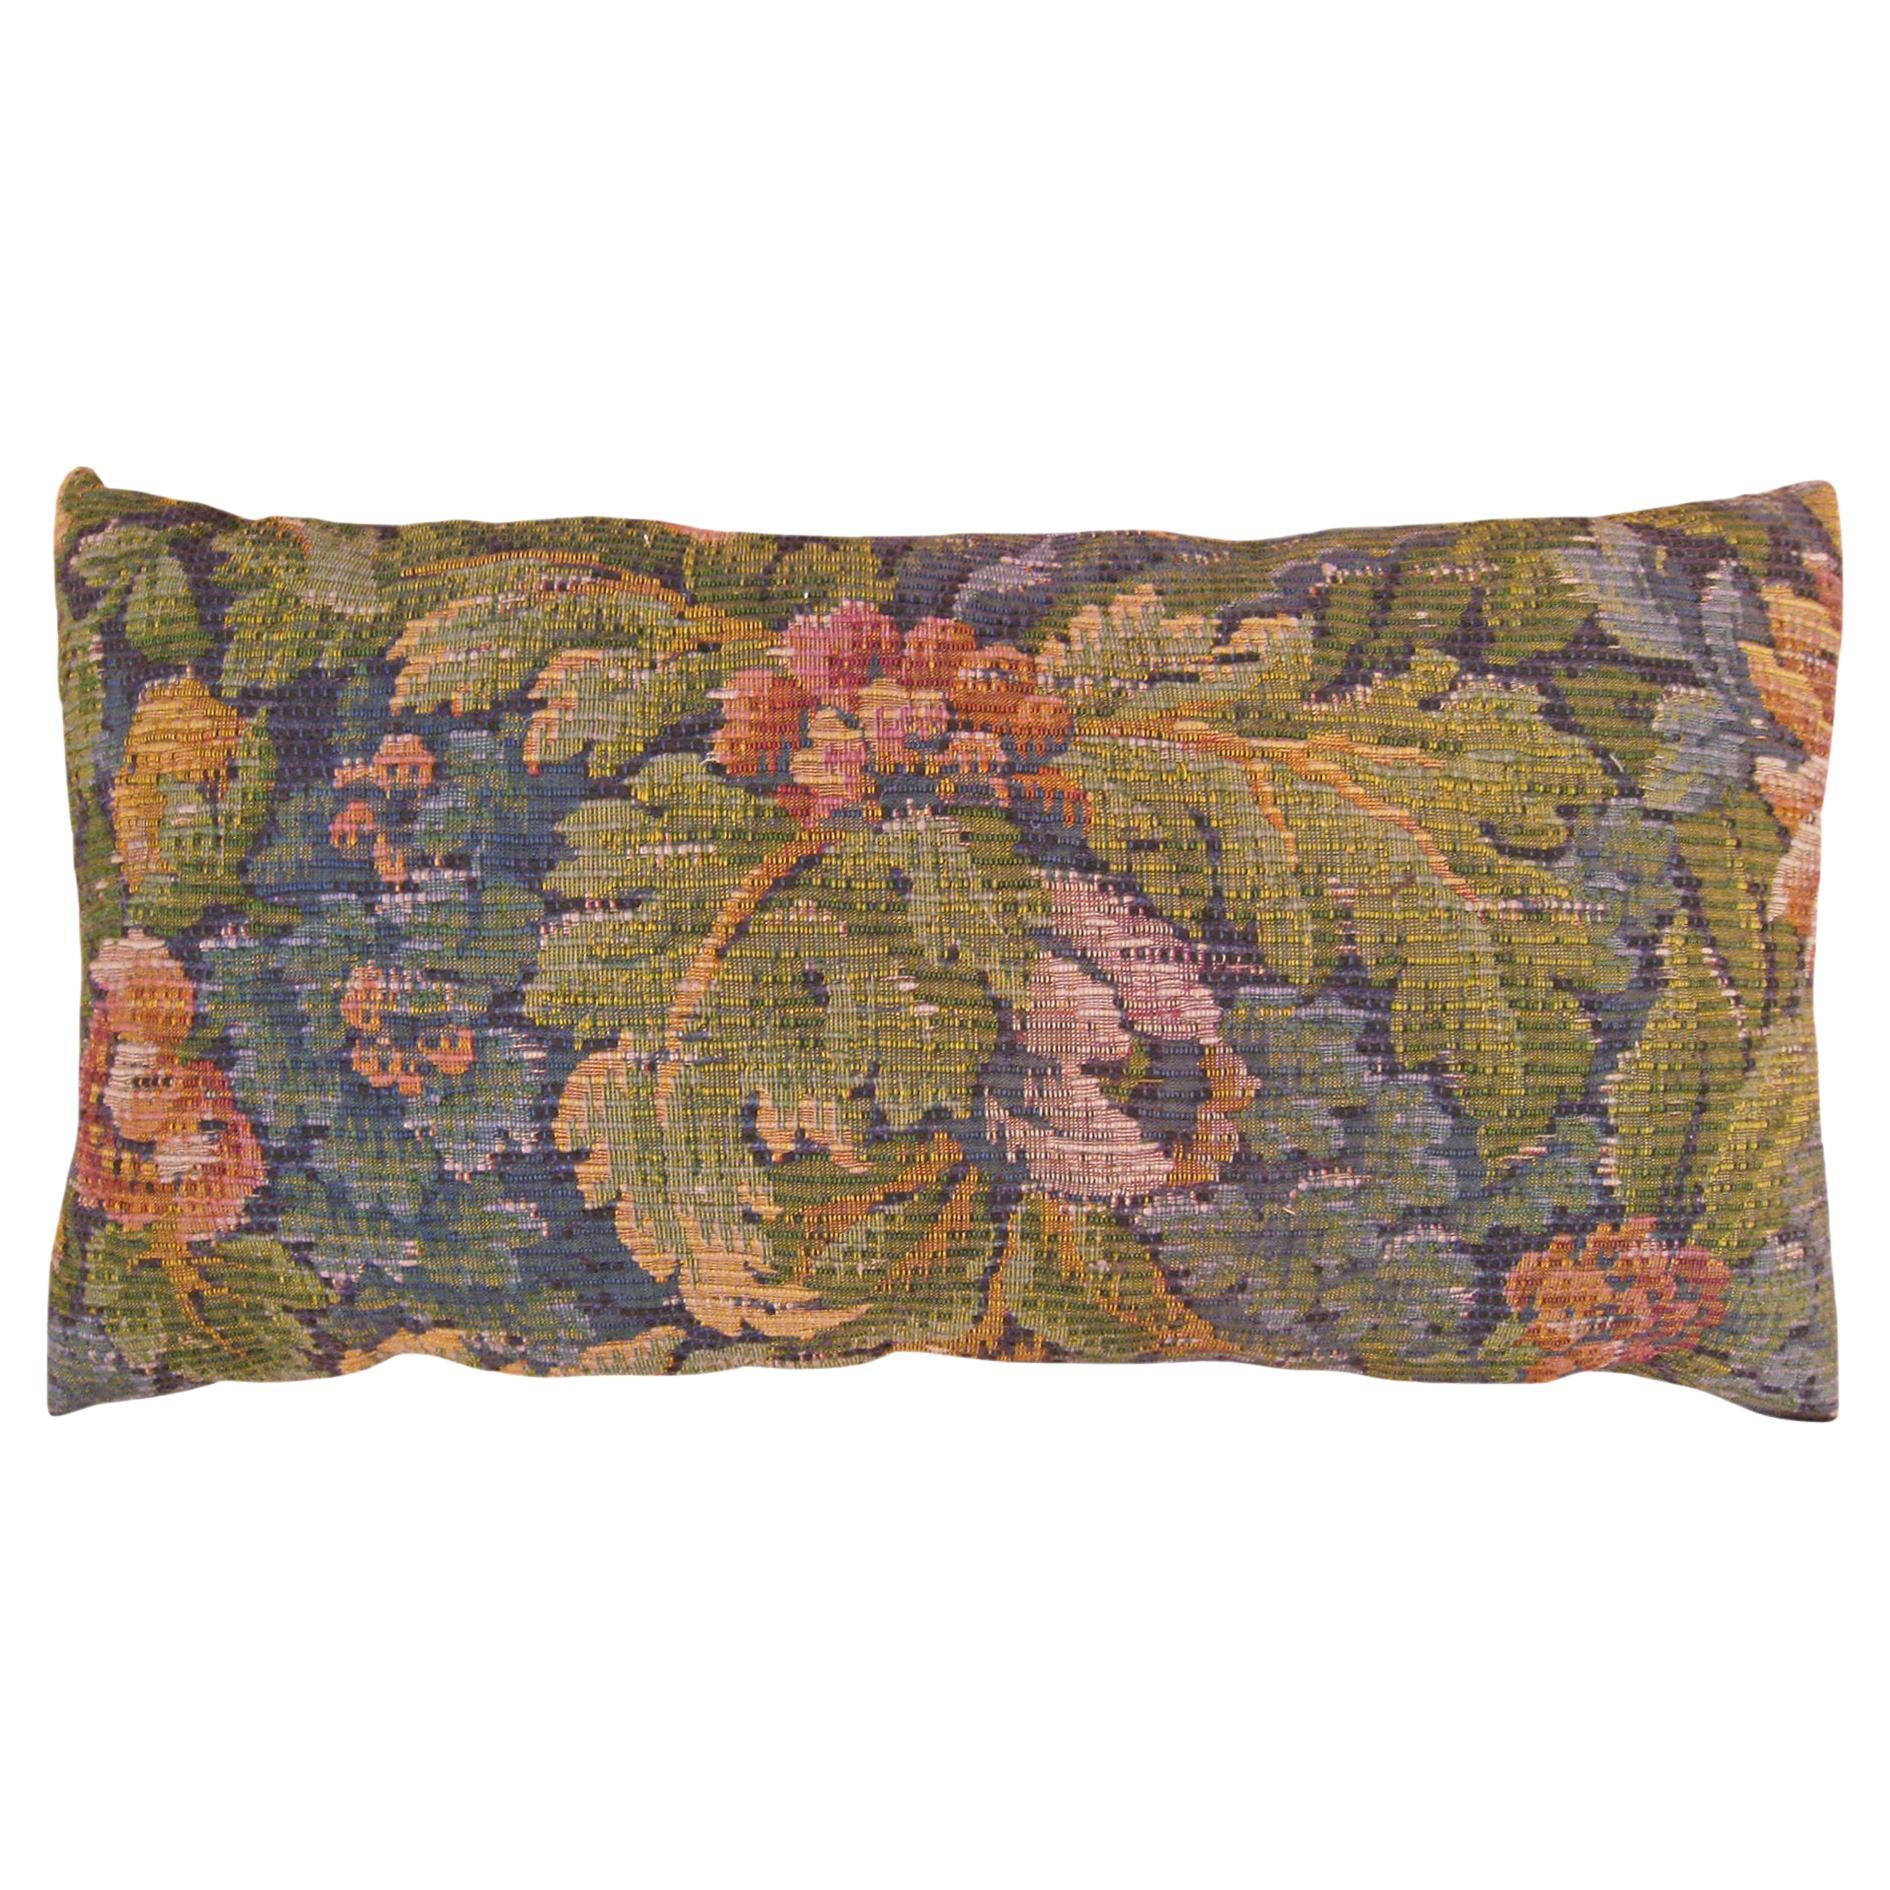 Coussin décoratif ancien en tapisserie jacquard avec éléments floraux sur toute sa surface